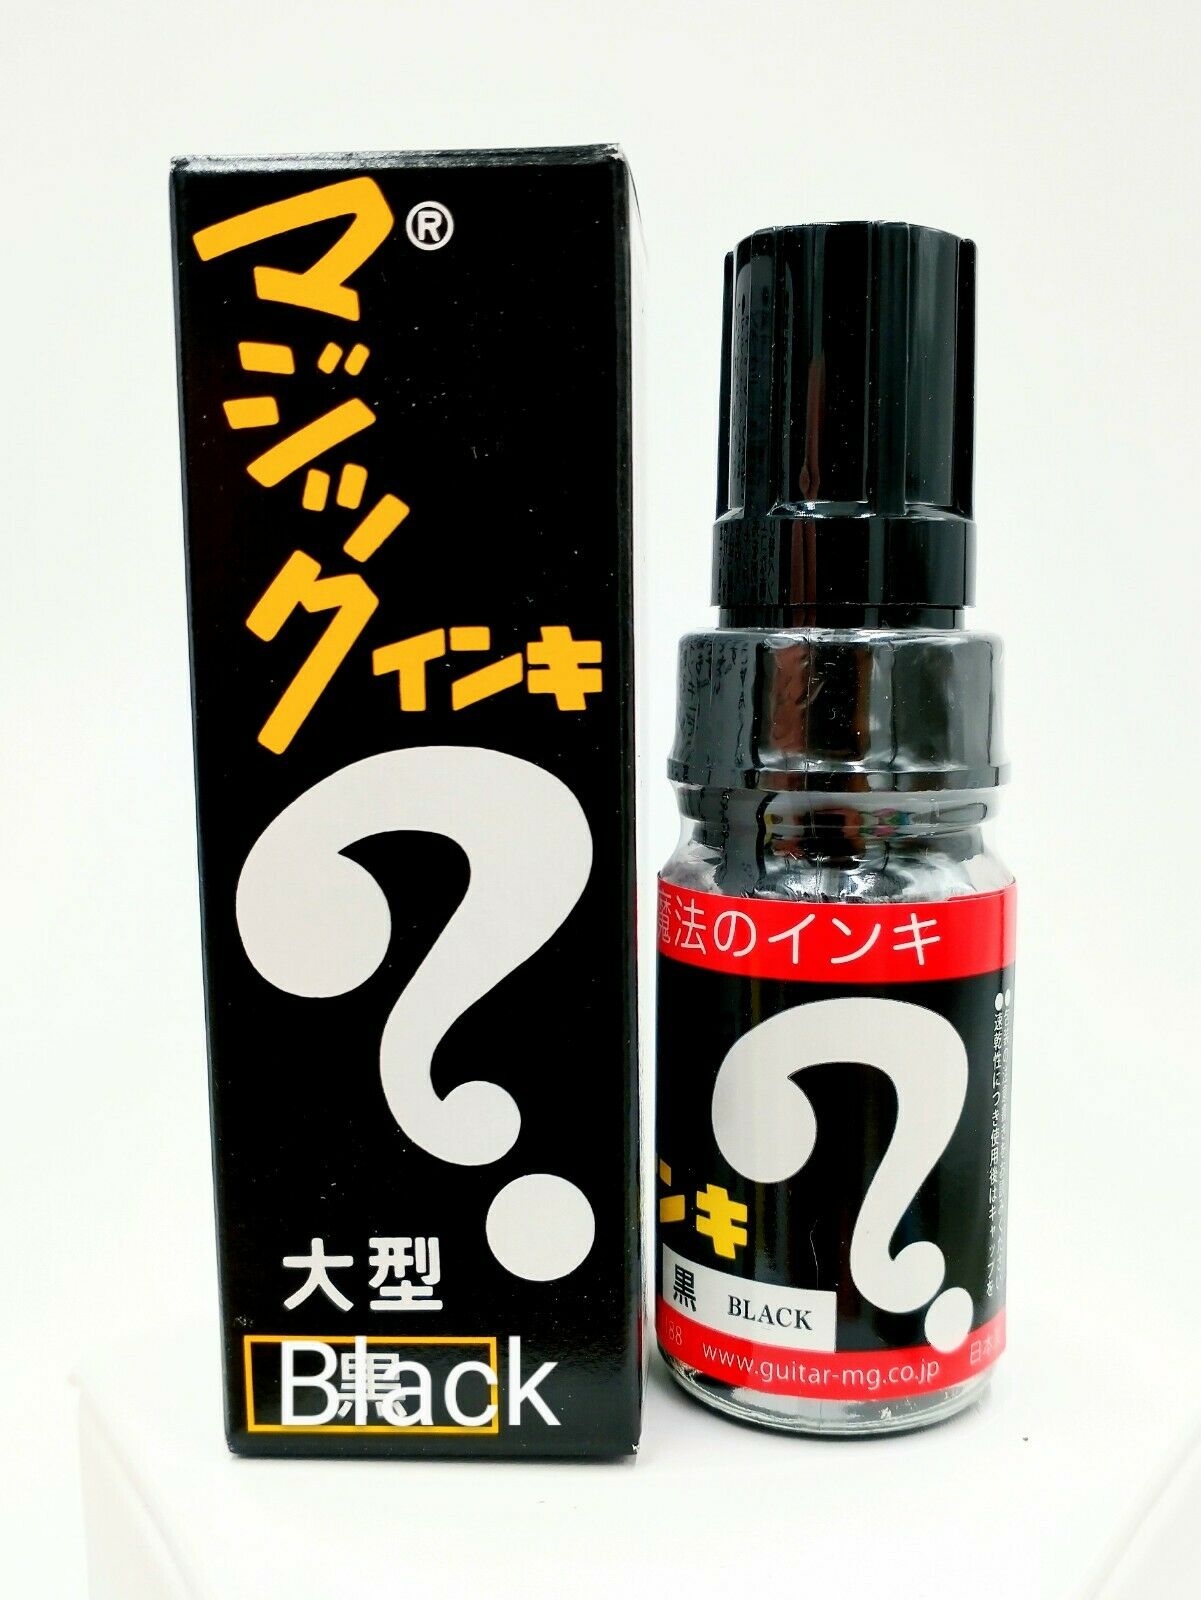 Magic Ink Glass Oil Based Ink Marker